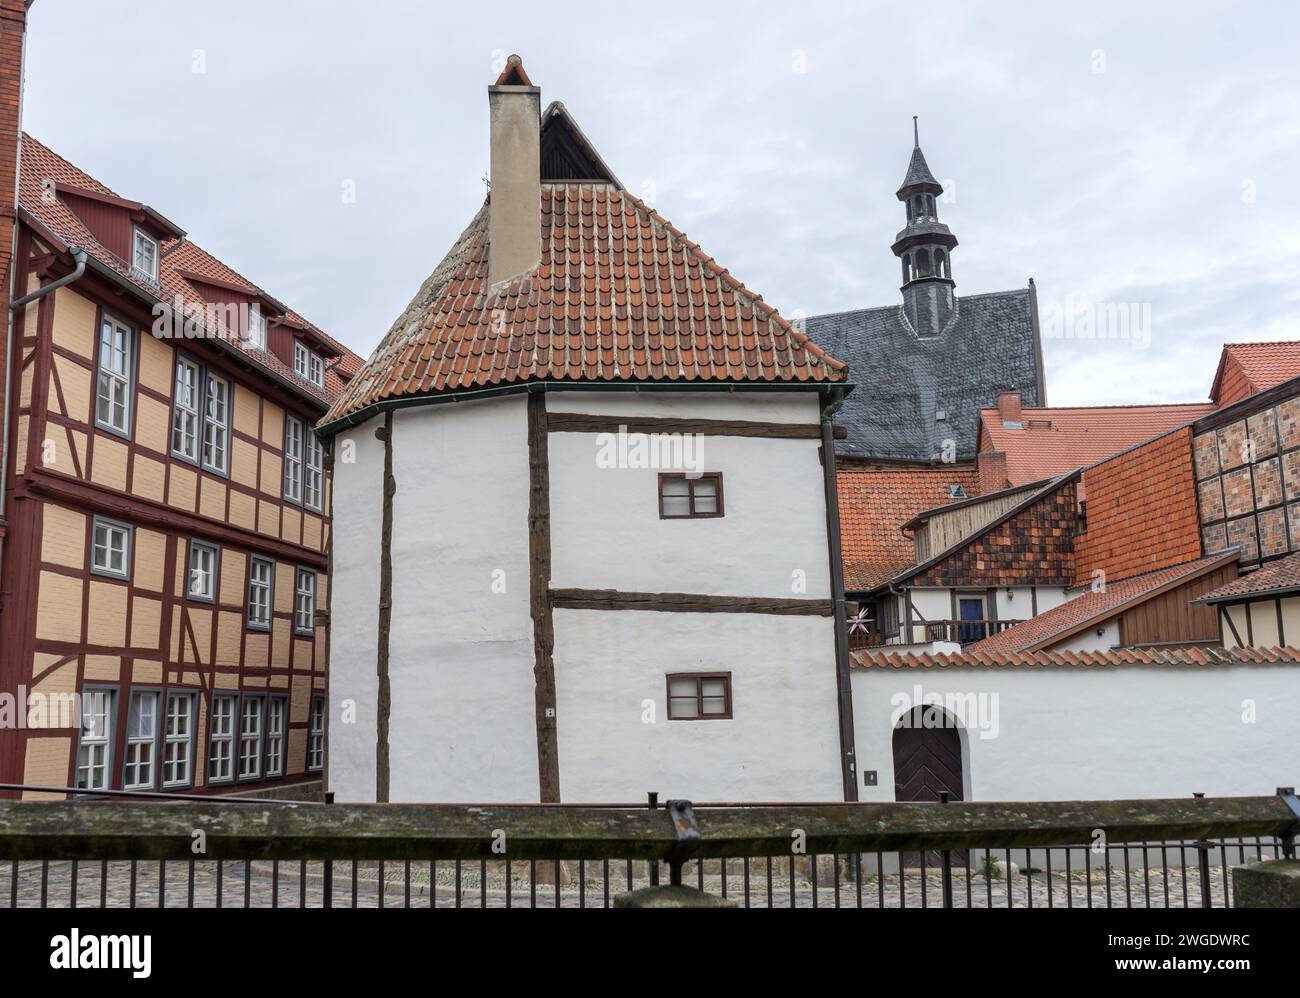 Maison historique à colombages, site du patrimoine mondial de l'UNESCO et musée à colombages à Quedlinburg, Saxe-Anhalt, Allemagne Banque D'Images